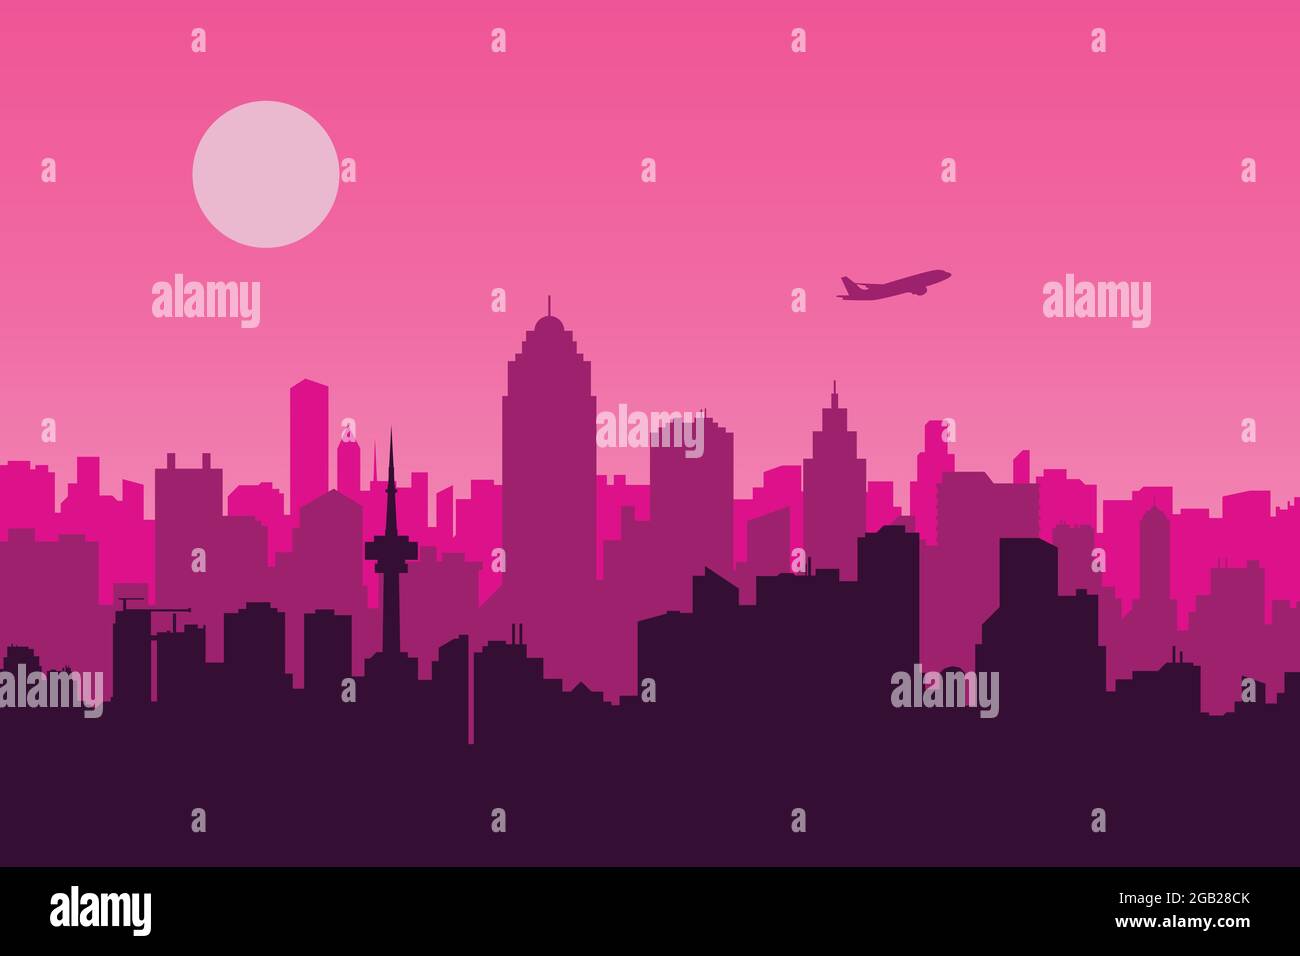 Illustration vectorielle d'une scène urbaine avec un fond rose, une métropole et une silhouette d'avion Illustration de Vecteur